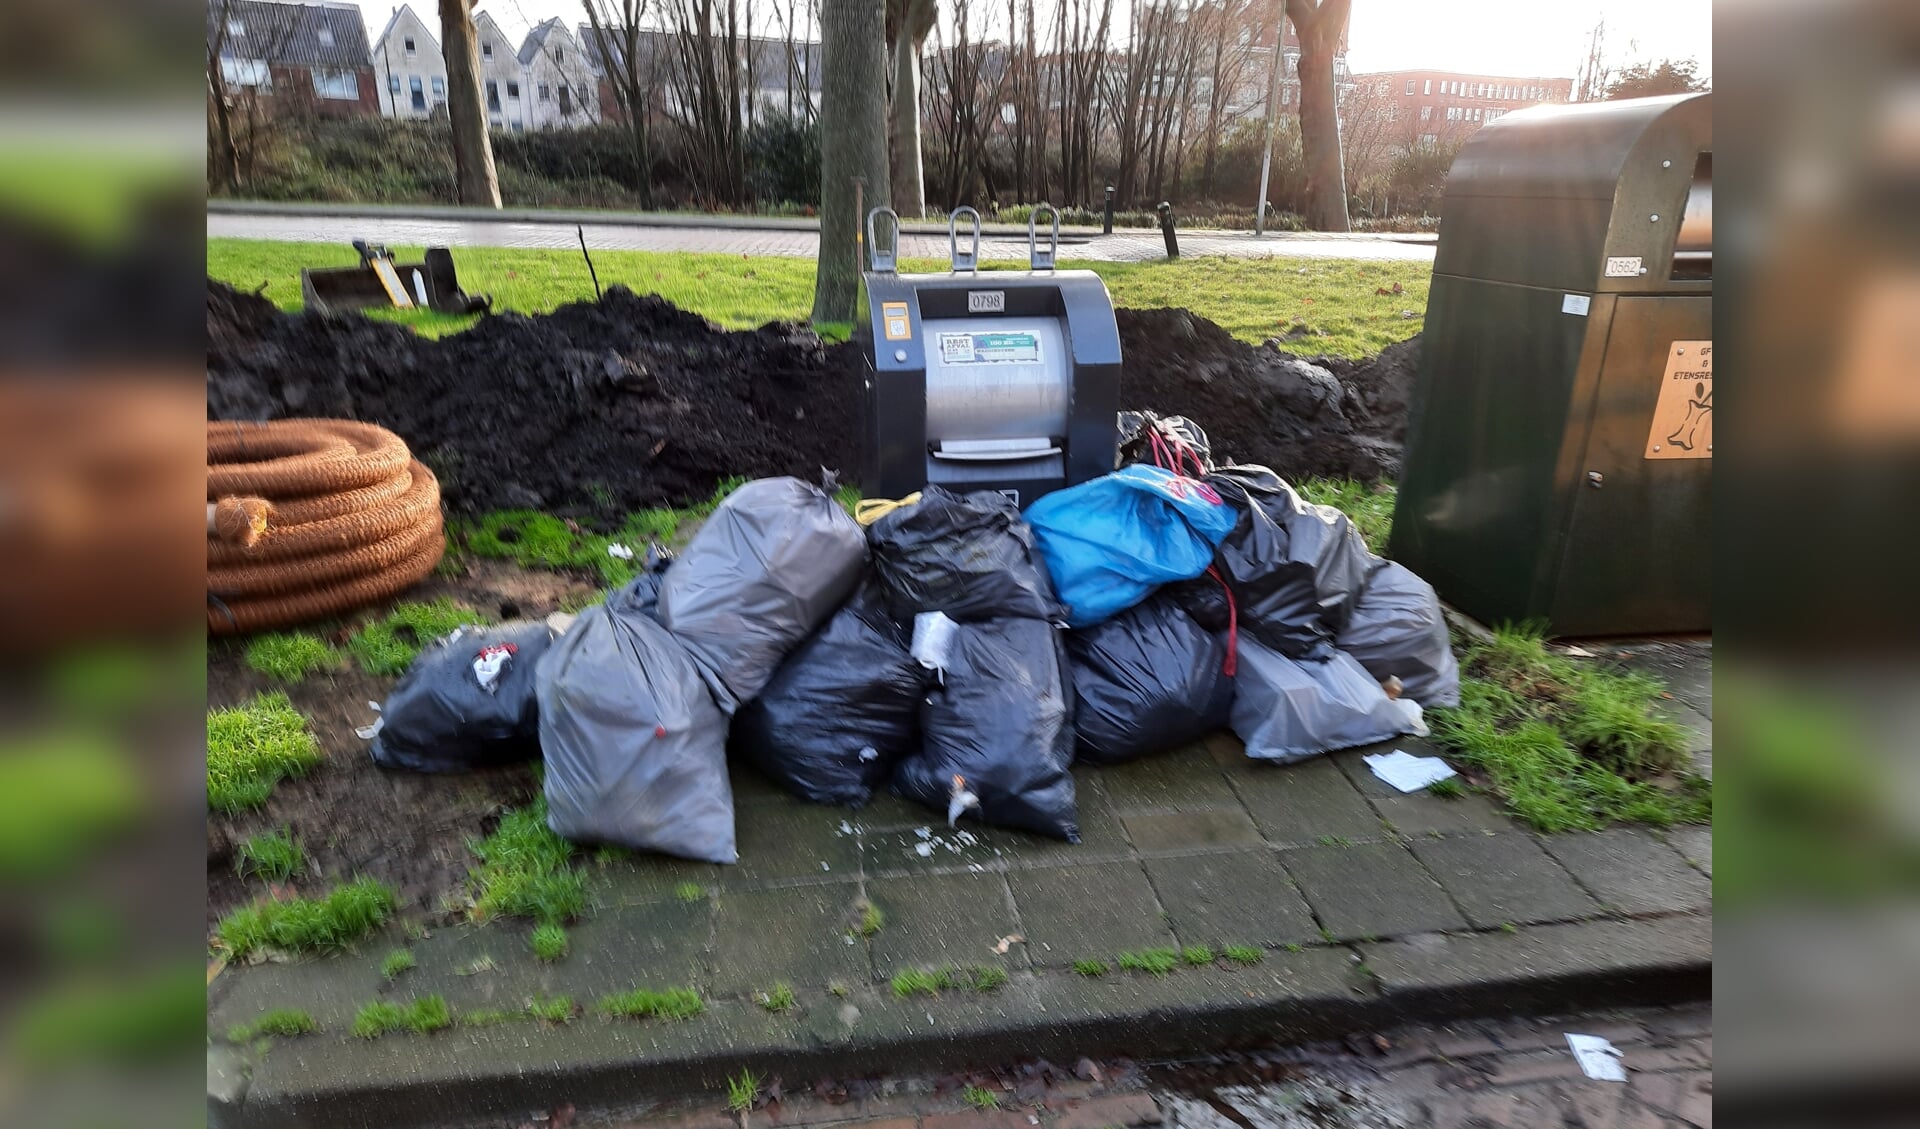 'Plaats geen afval naast de container', is het dringende advies van wethouder Leferink.